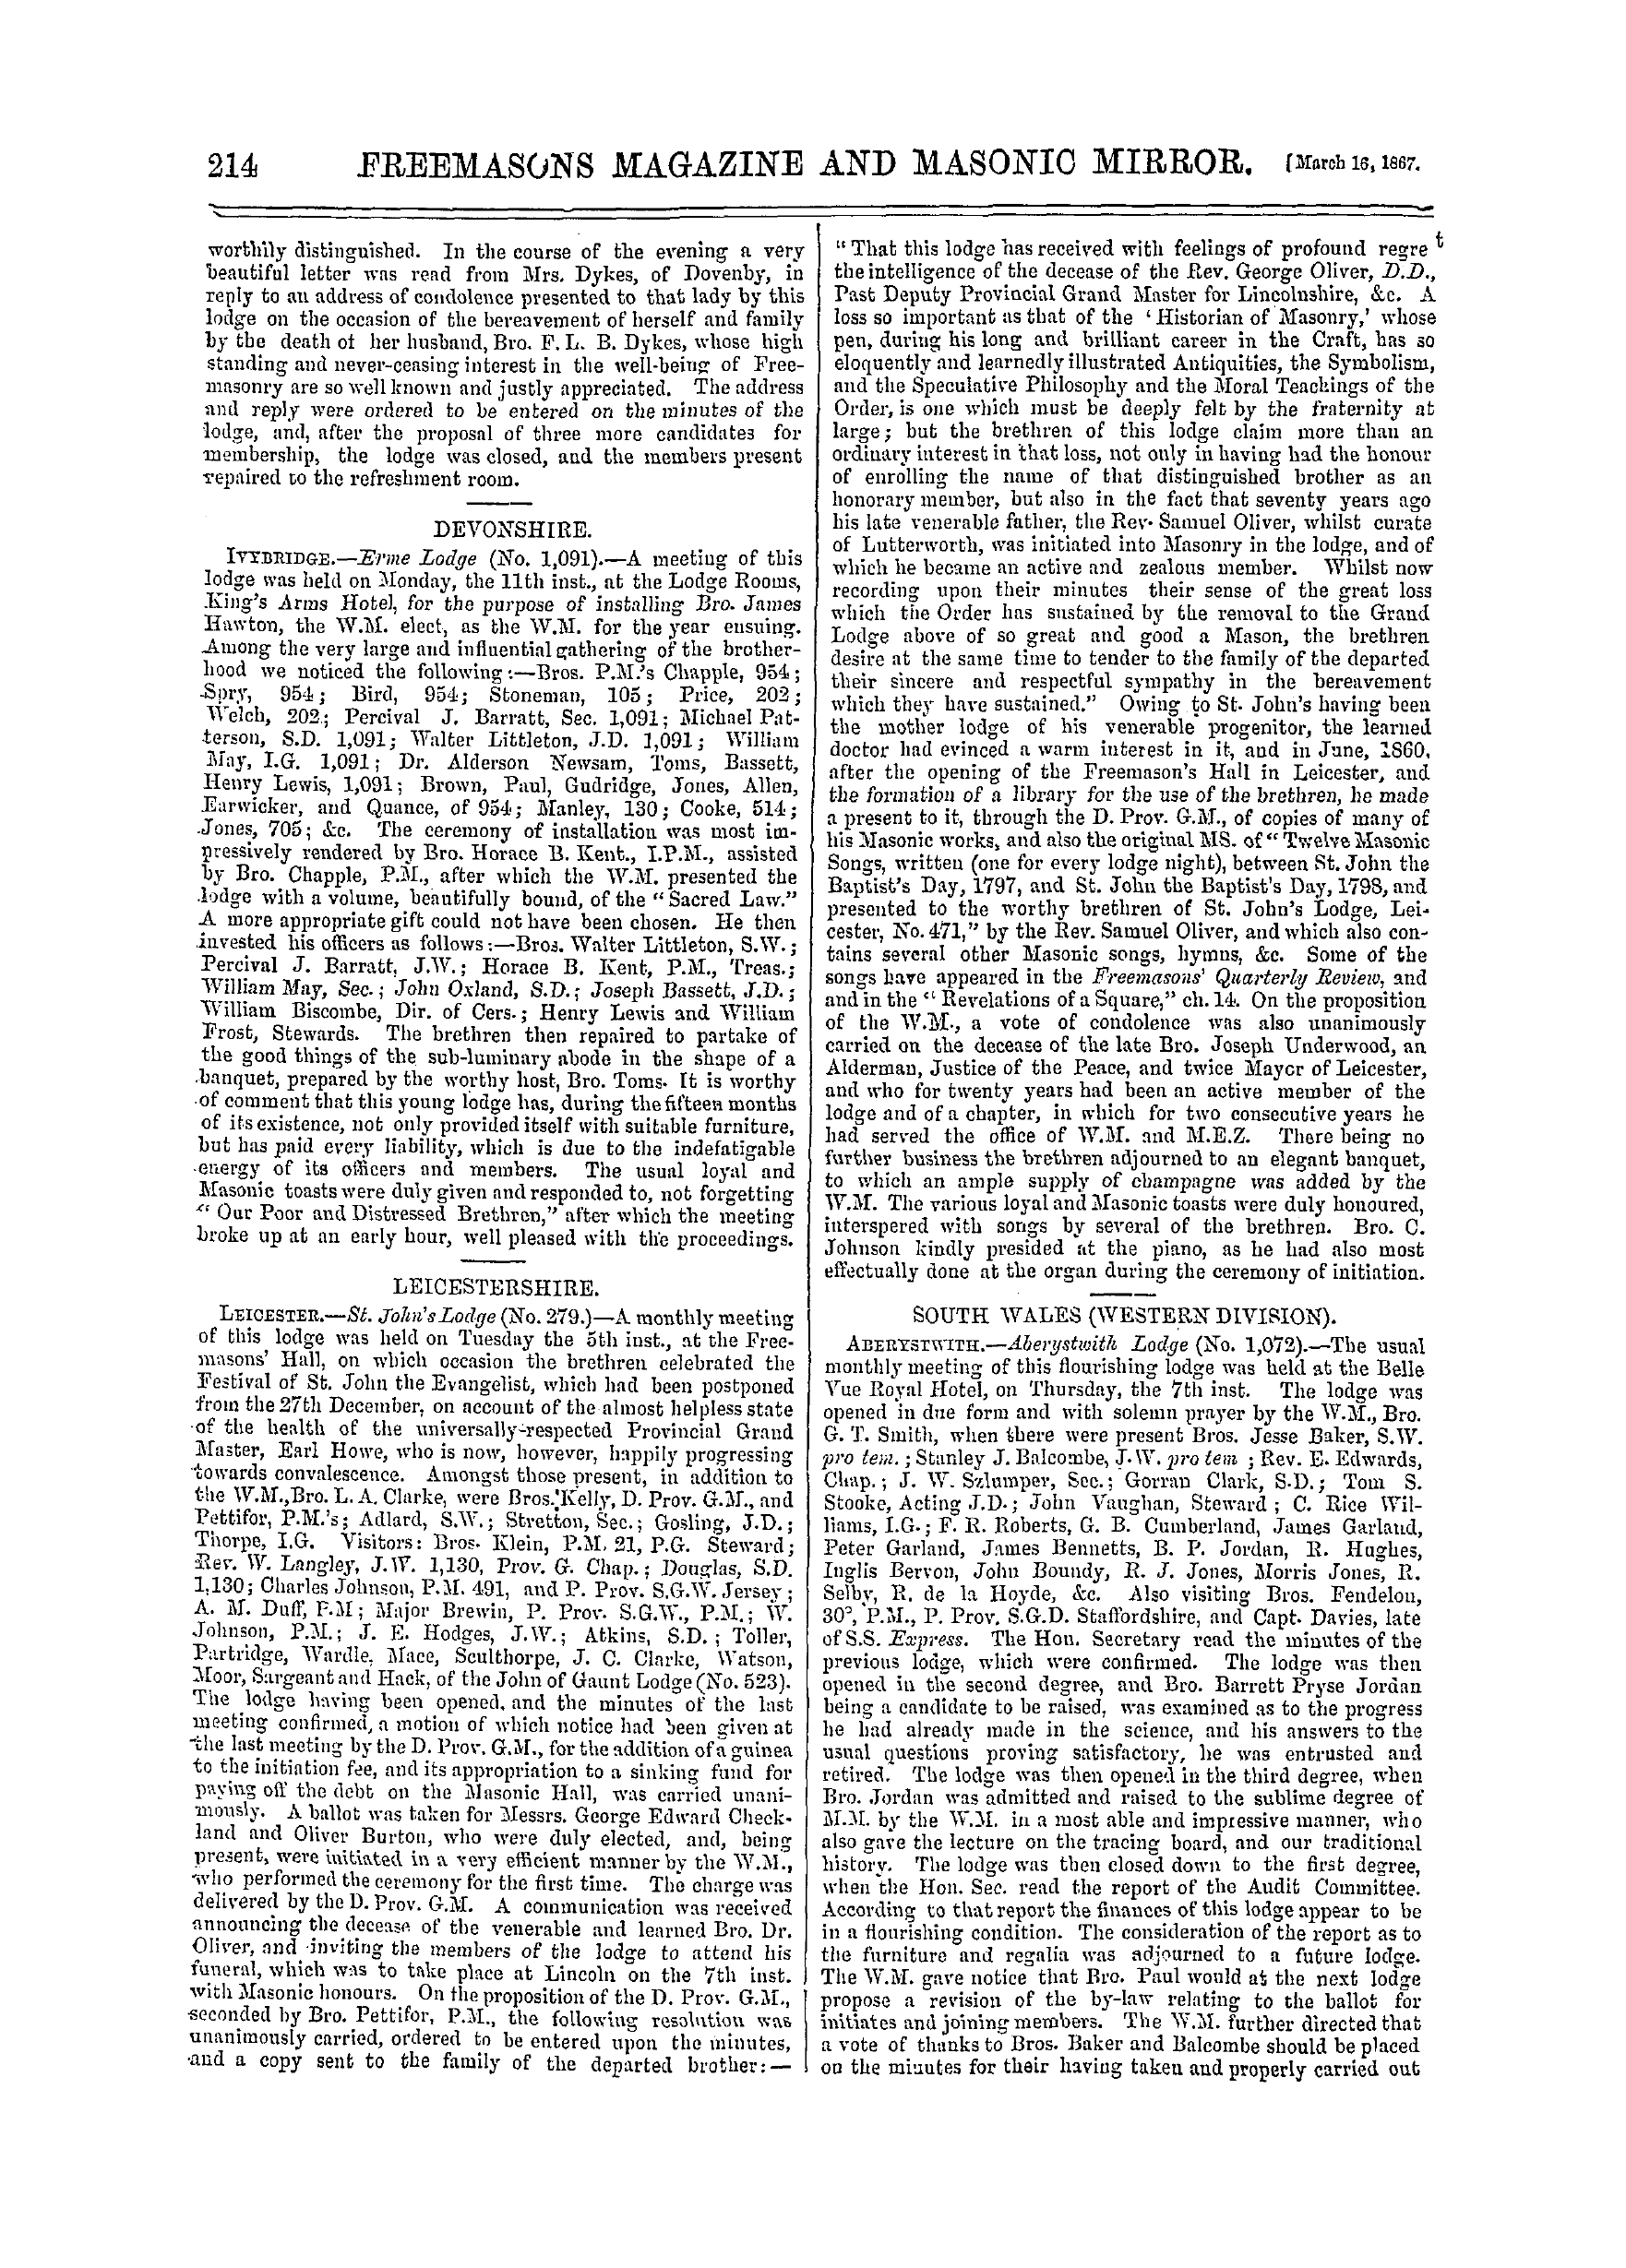 The Freemasons' Monthly Magazine: 1867-03-16: 14